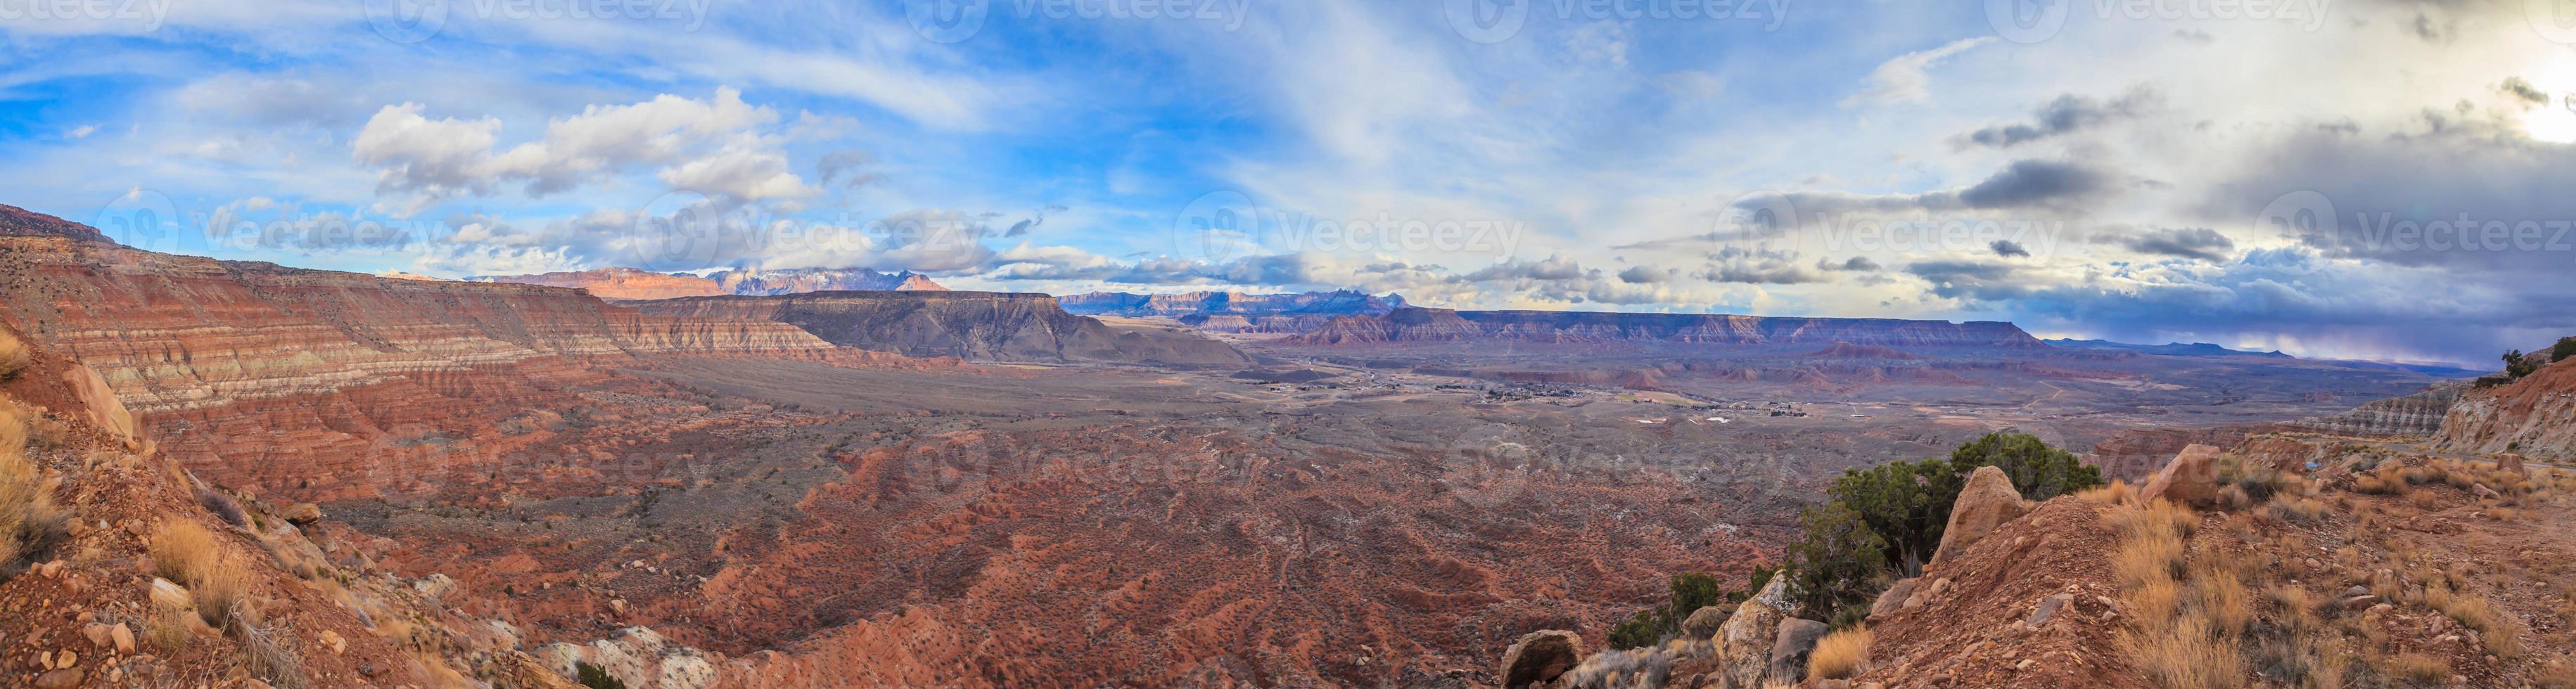 panorama från de öken- i arizona i vinter- foto